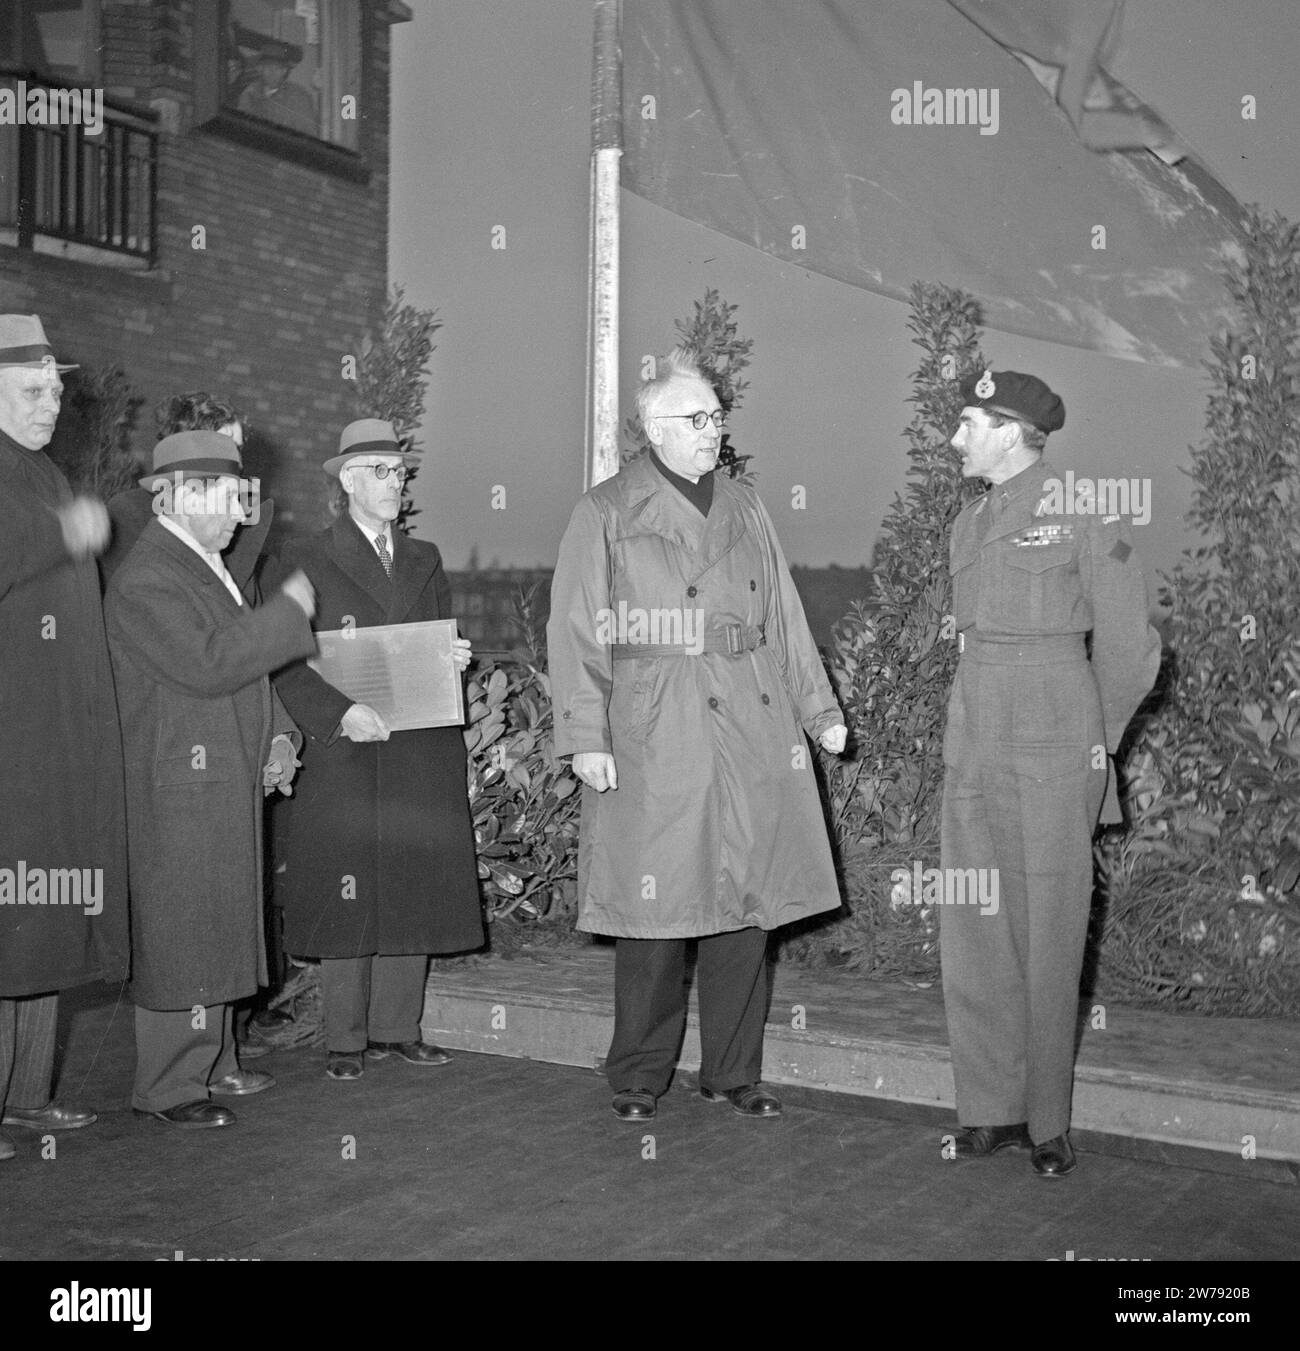 Le lieutenant-général canadien Guy Granville Simonds rencontre le maire d'Amsterdam Feike de Boer (avec imperméable) et les membres du conseil sur le pont Berlage le 28 décembre 1945. 28 décembre 1945 Banque D'Images